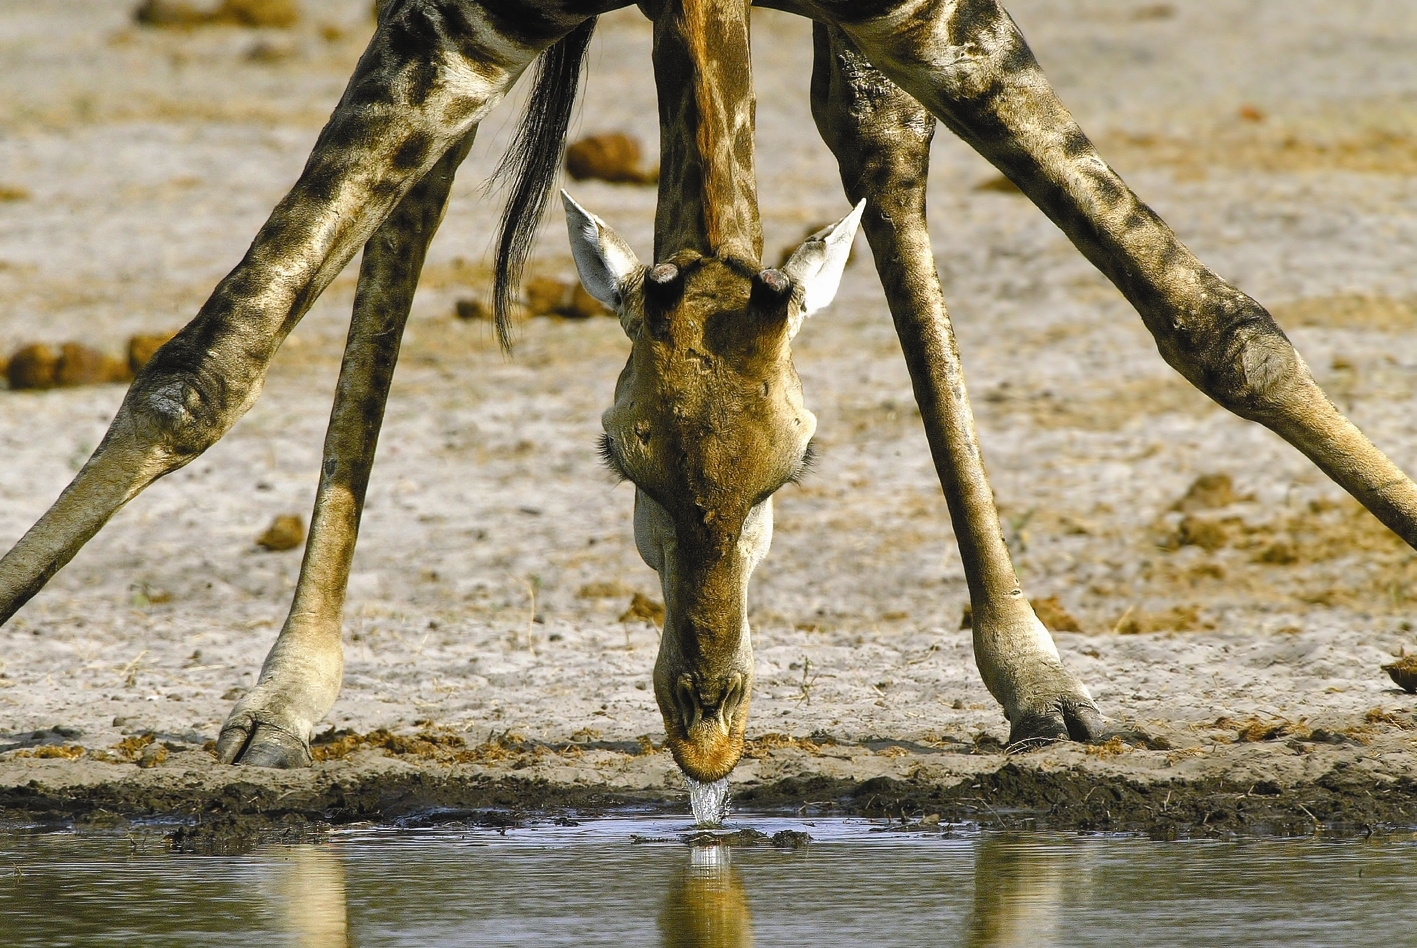 Refreshment (Giraffe)